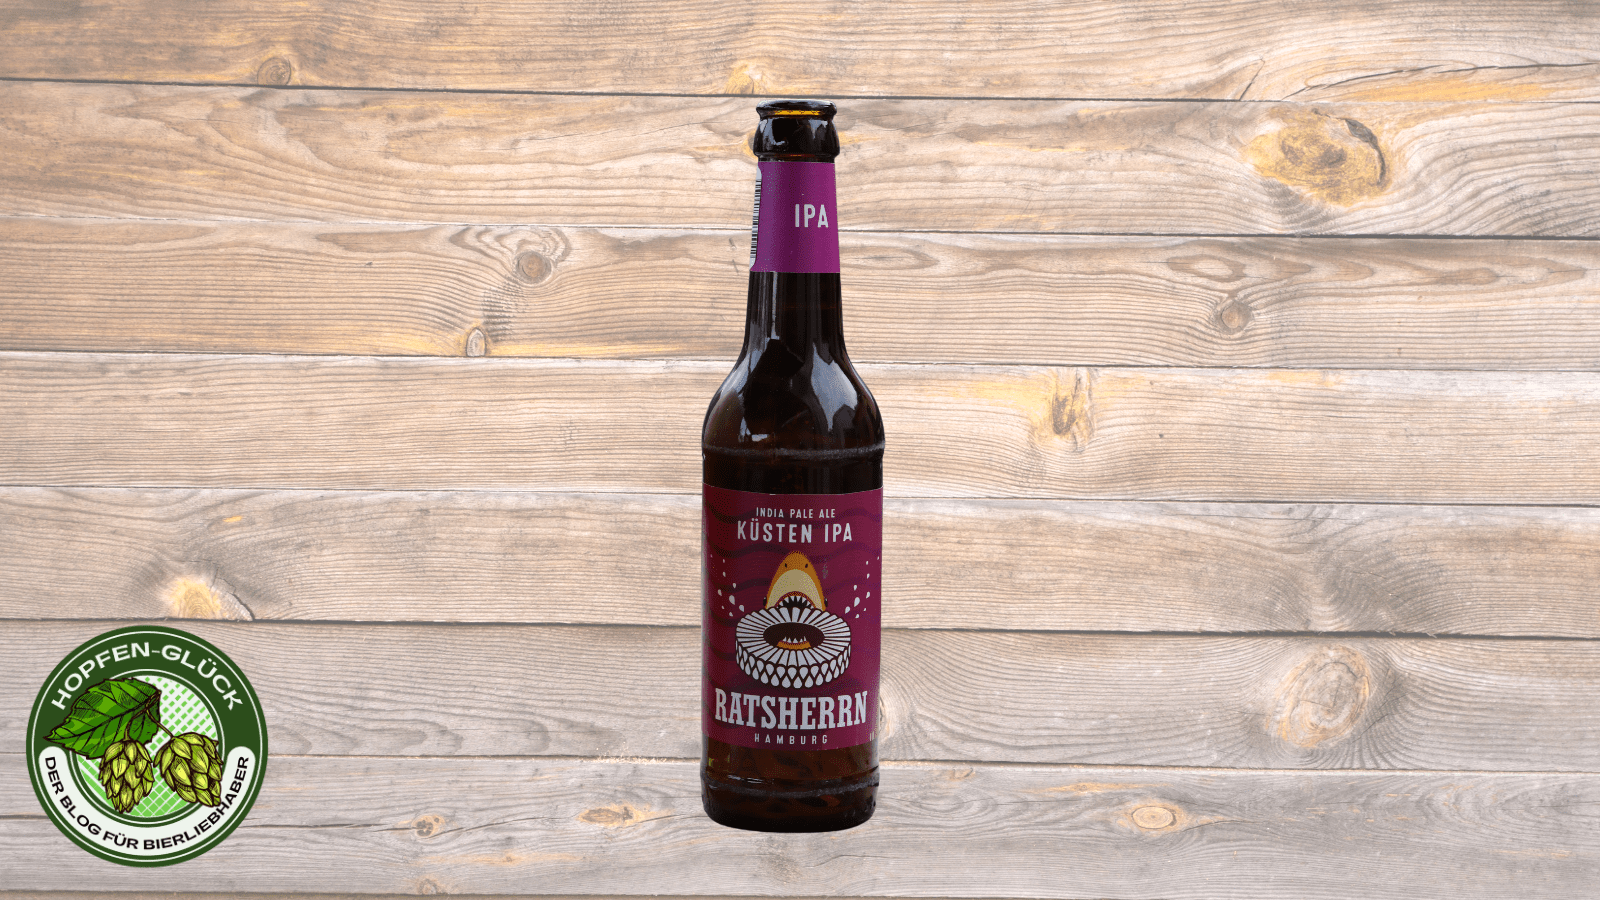 Ratsherrn Brauerei – Küsten IPA